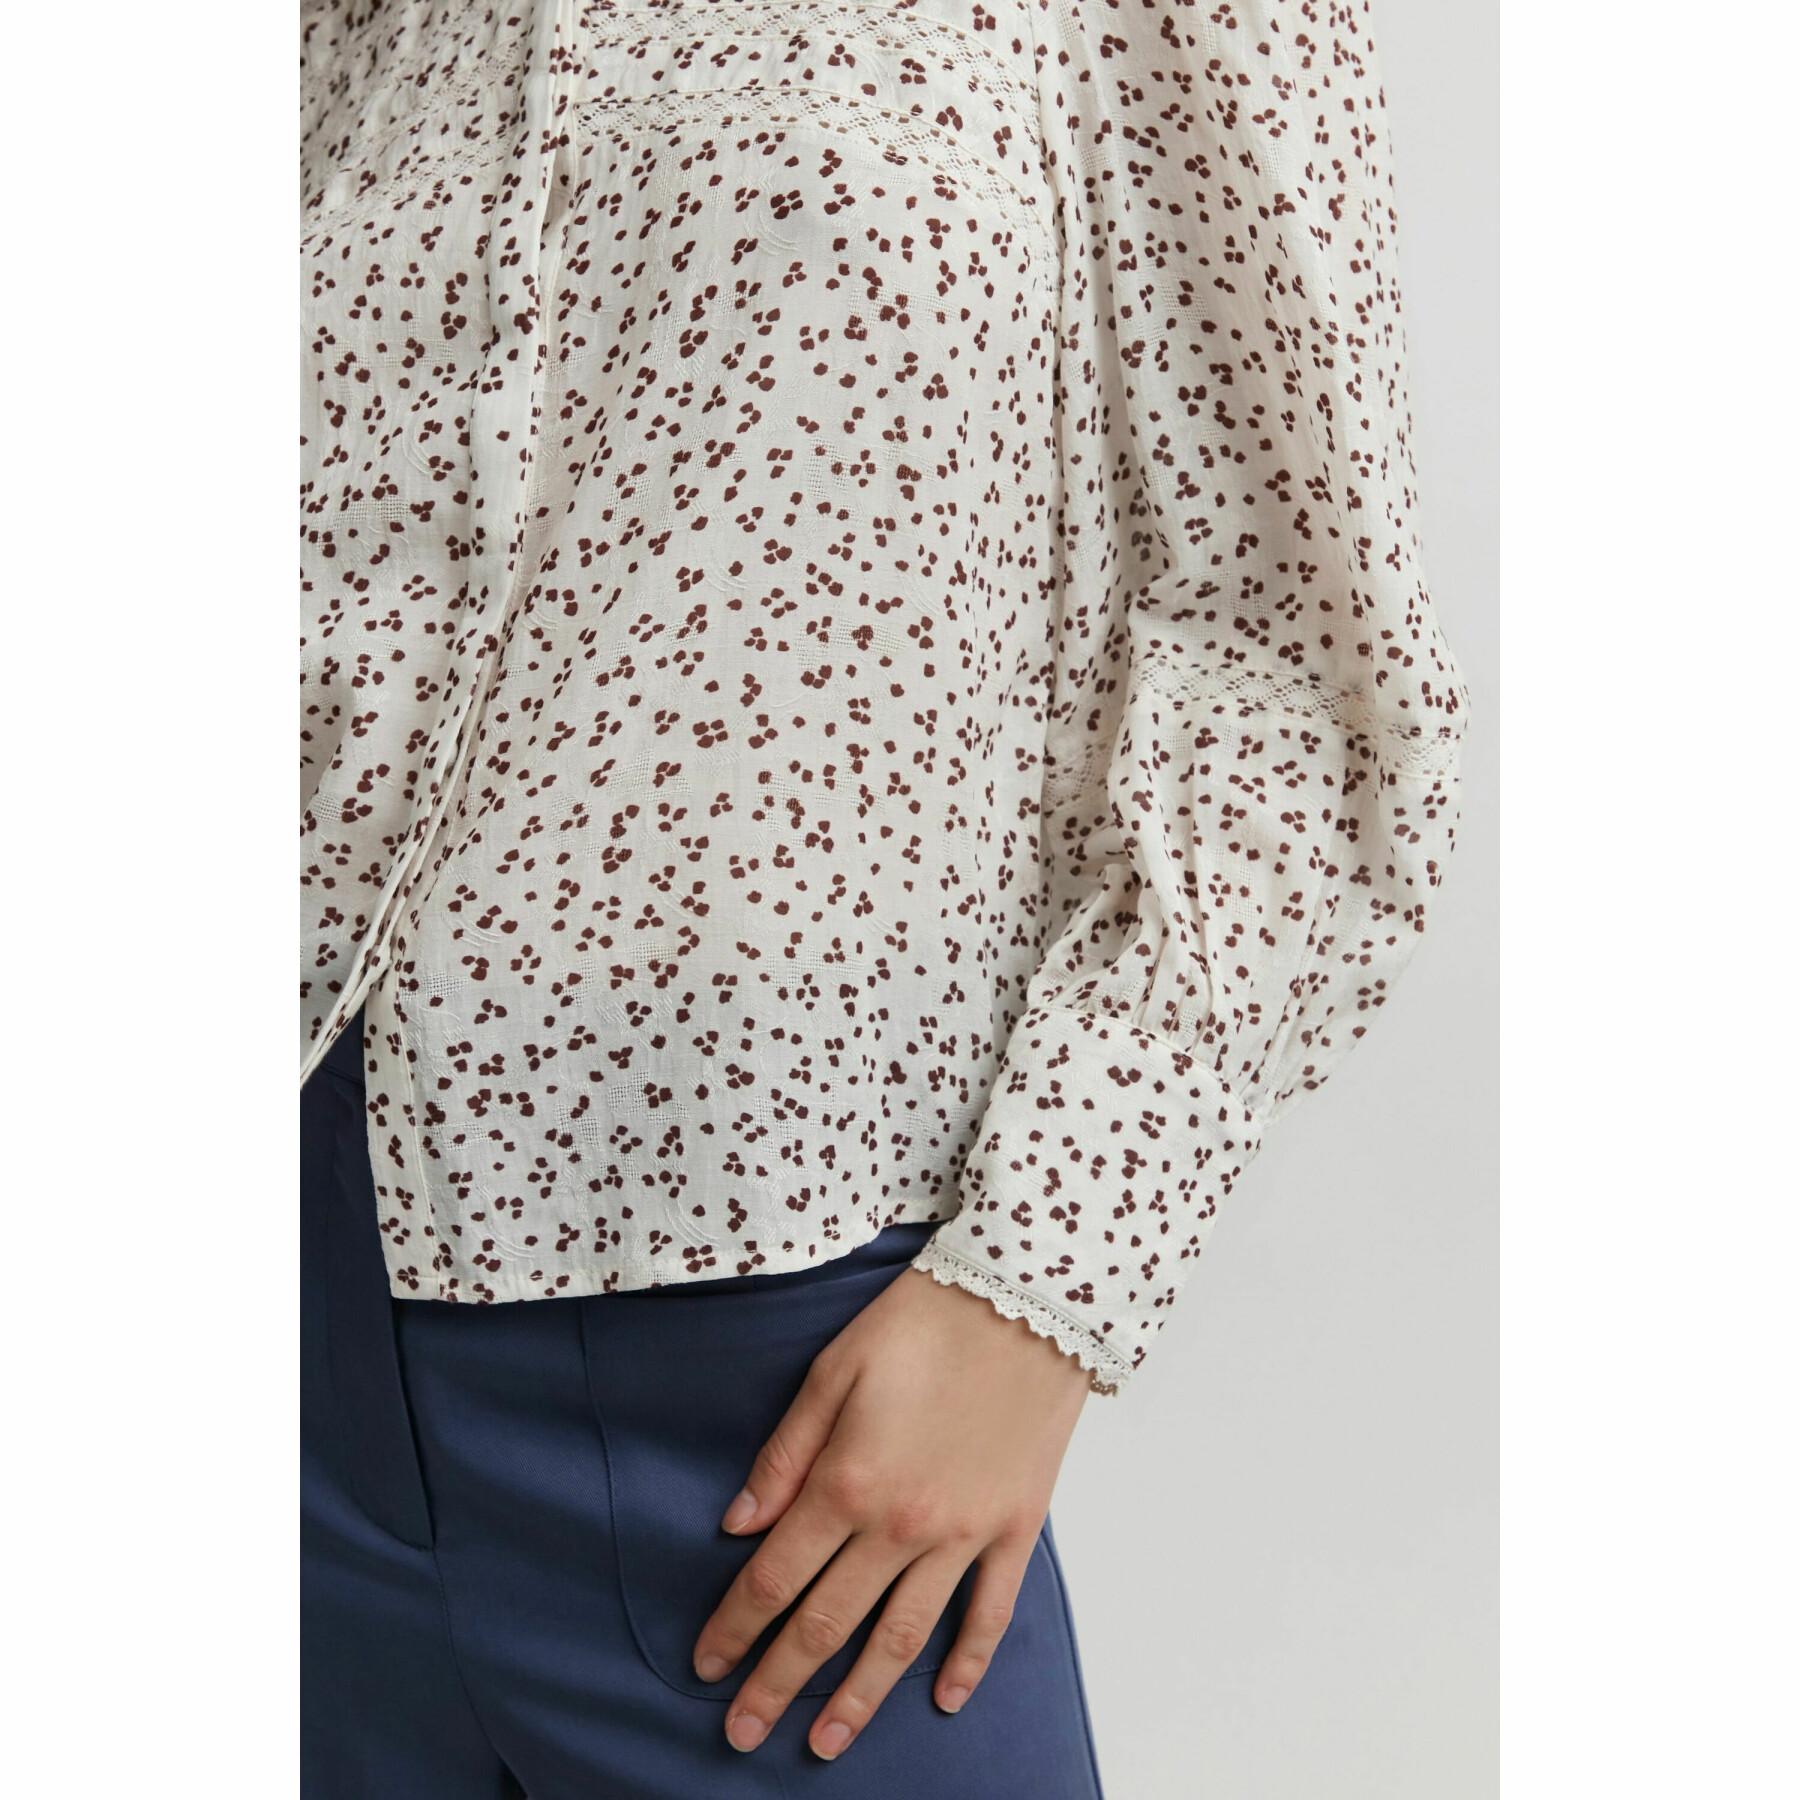 Women's long sleeve blouse Atelier Rêve Irdesiree